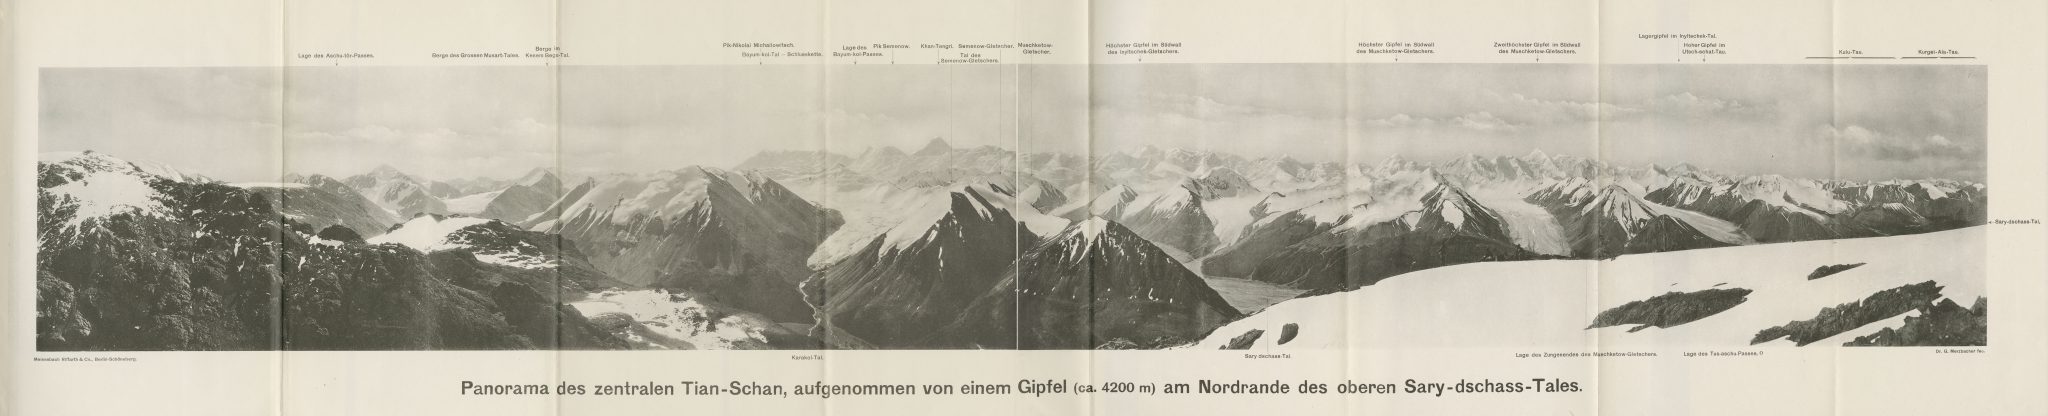 Vorläufiger Bericht über eine in den Jahren 1902 und 1903 ausgeführte Forschungsreise in den zentralen Tian-Schan Gottfried Merzbacher